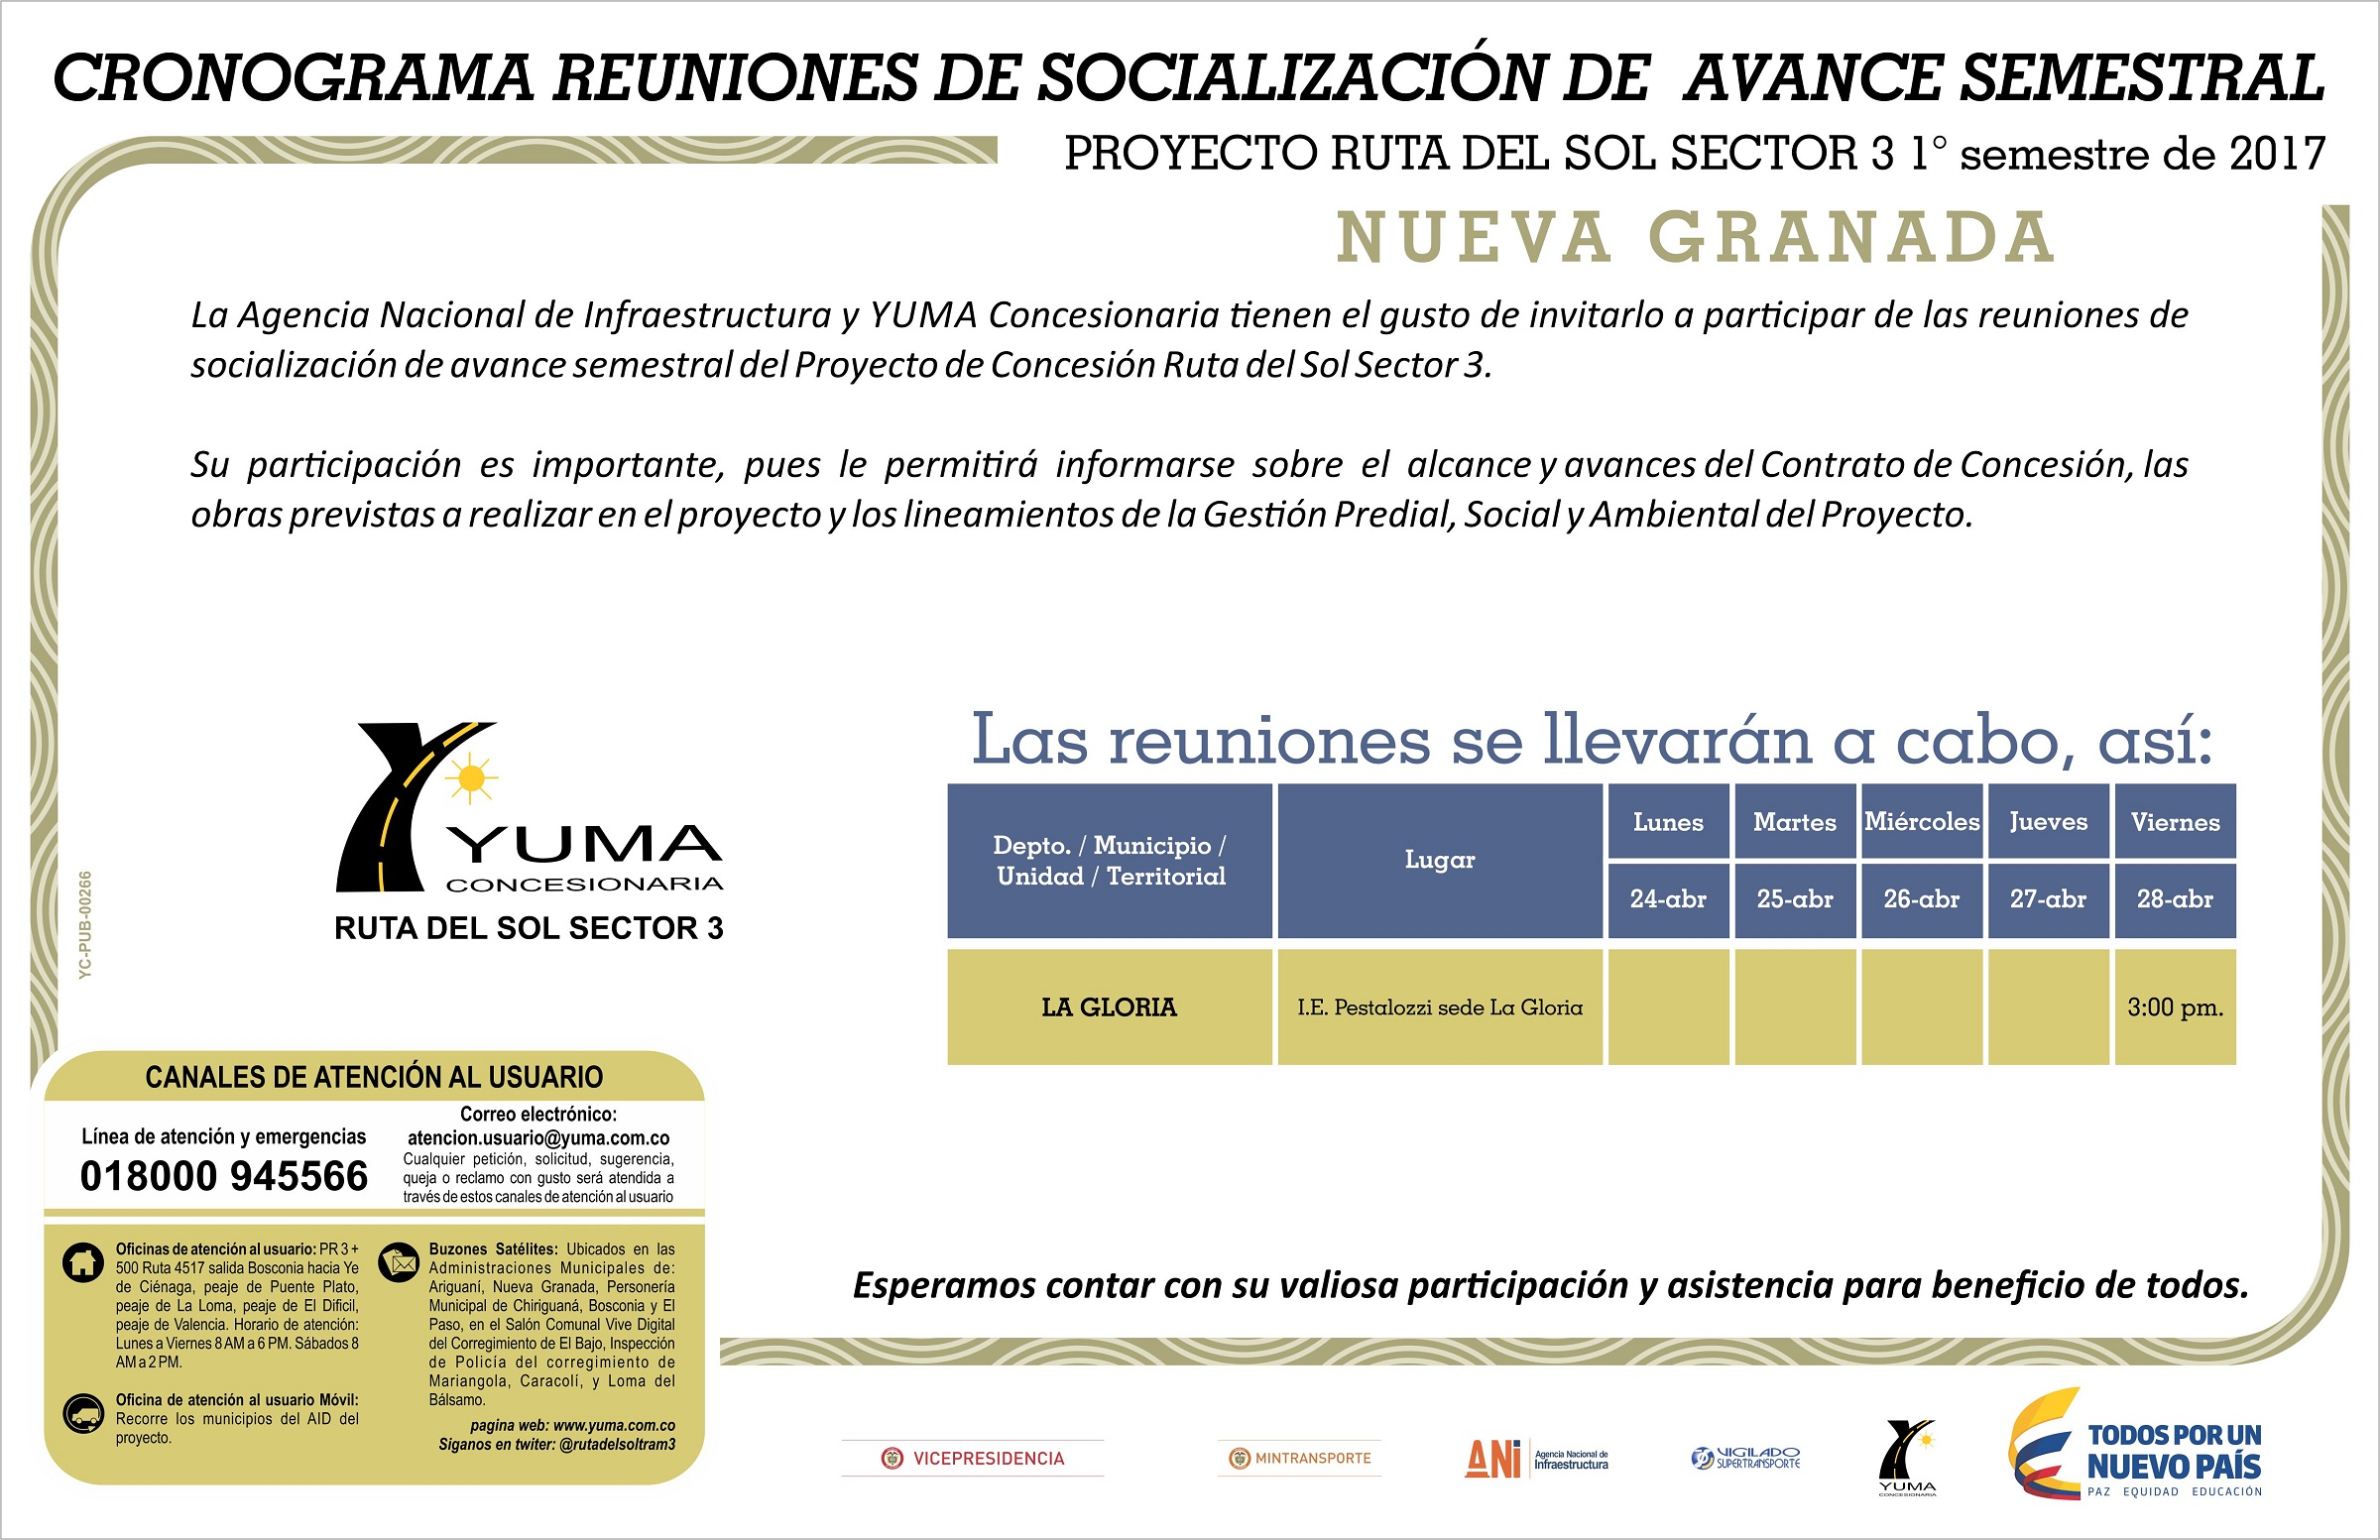 En este momento estás viendo Cronograma reuniones de socialización de avance semestral Nueva Granada